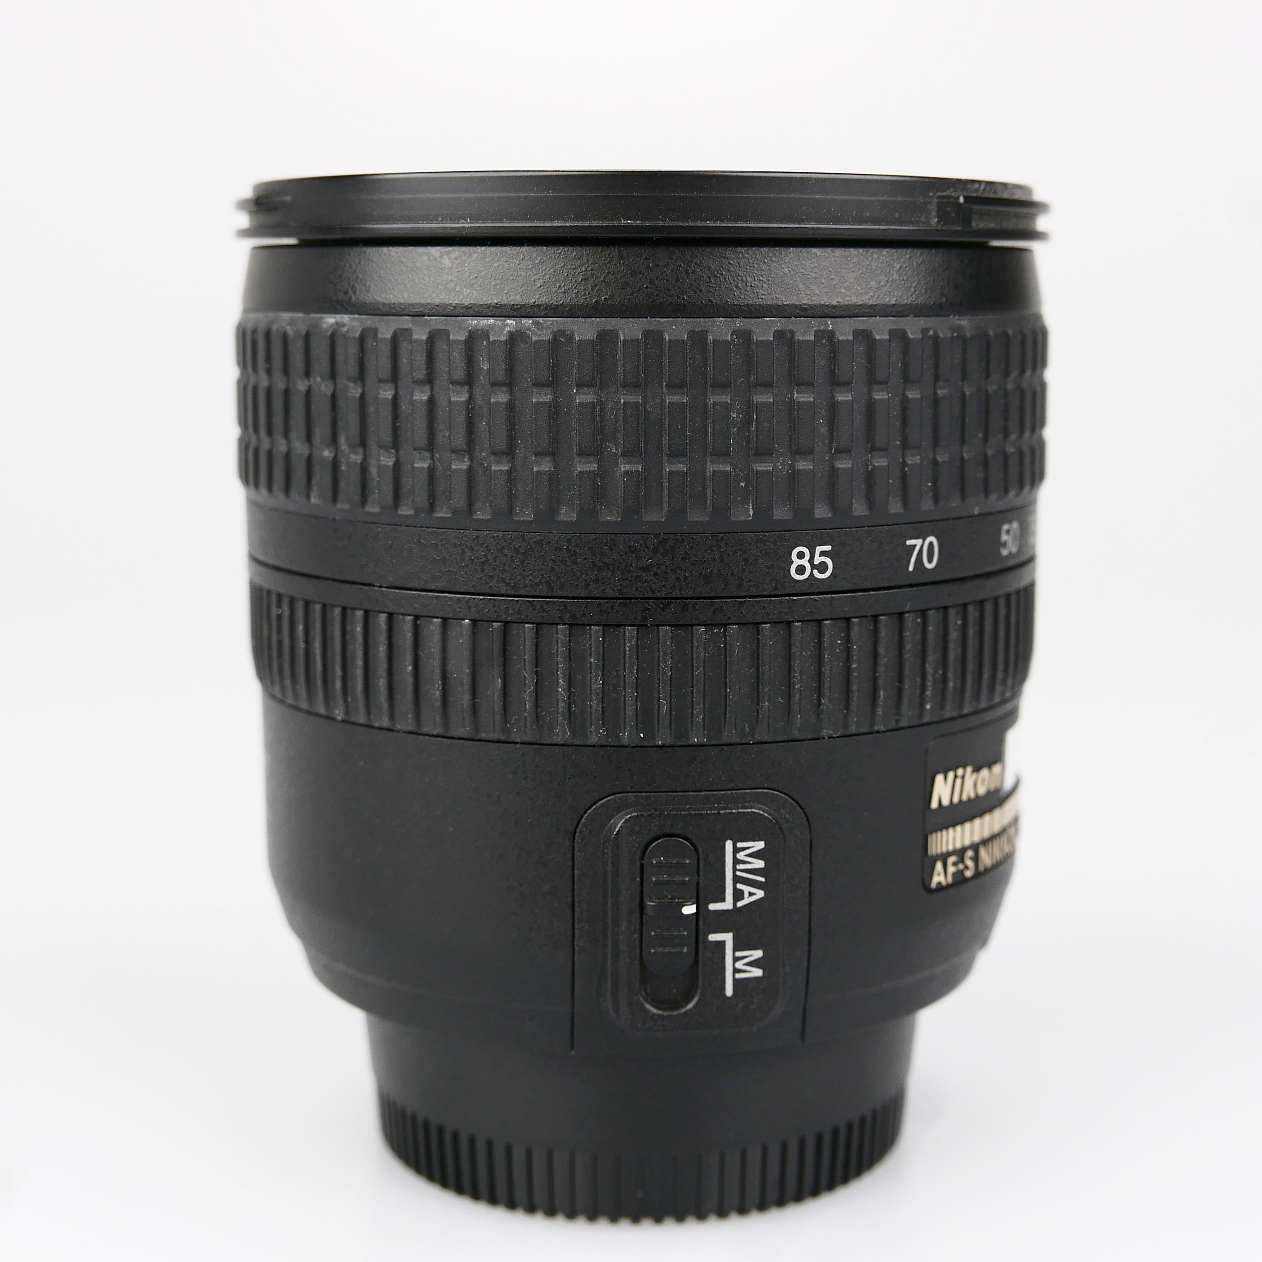 (Myyty) Nikon AF-S Nikkor 24-85mm f/3.5-4.5G ED VR (käytetty)